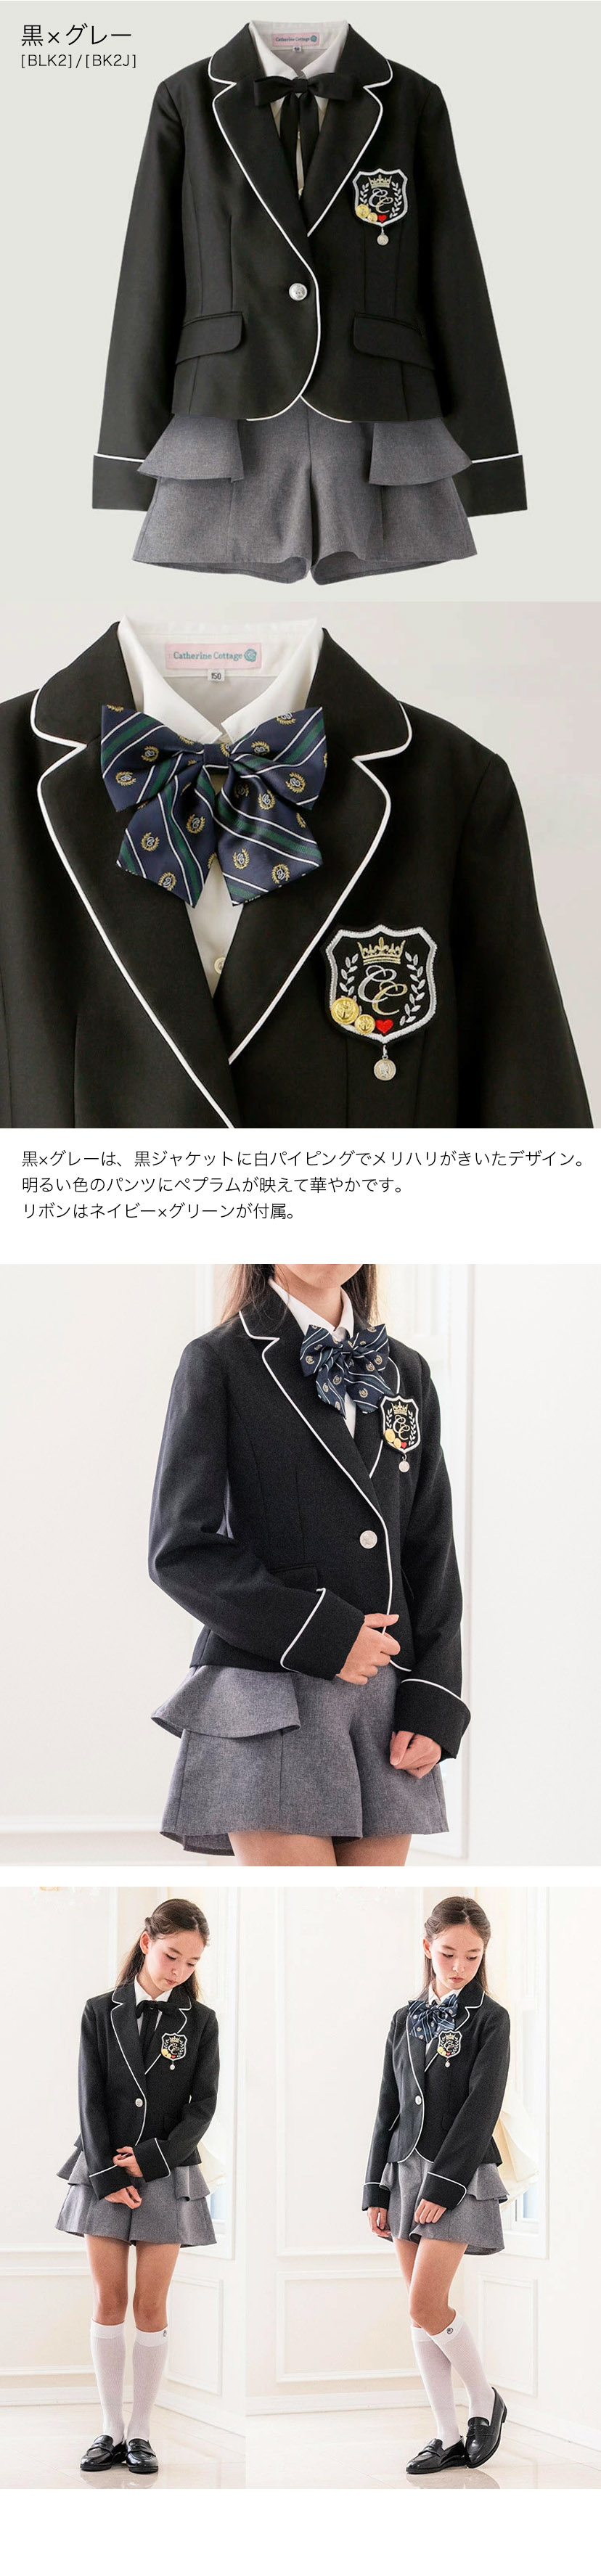 制服,女の子,卒業スーツ,卒服